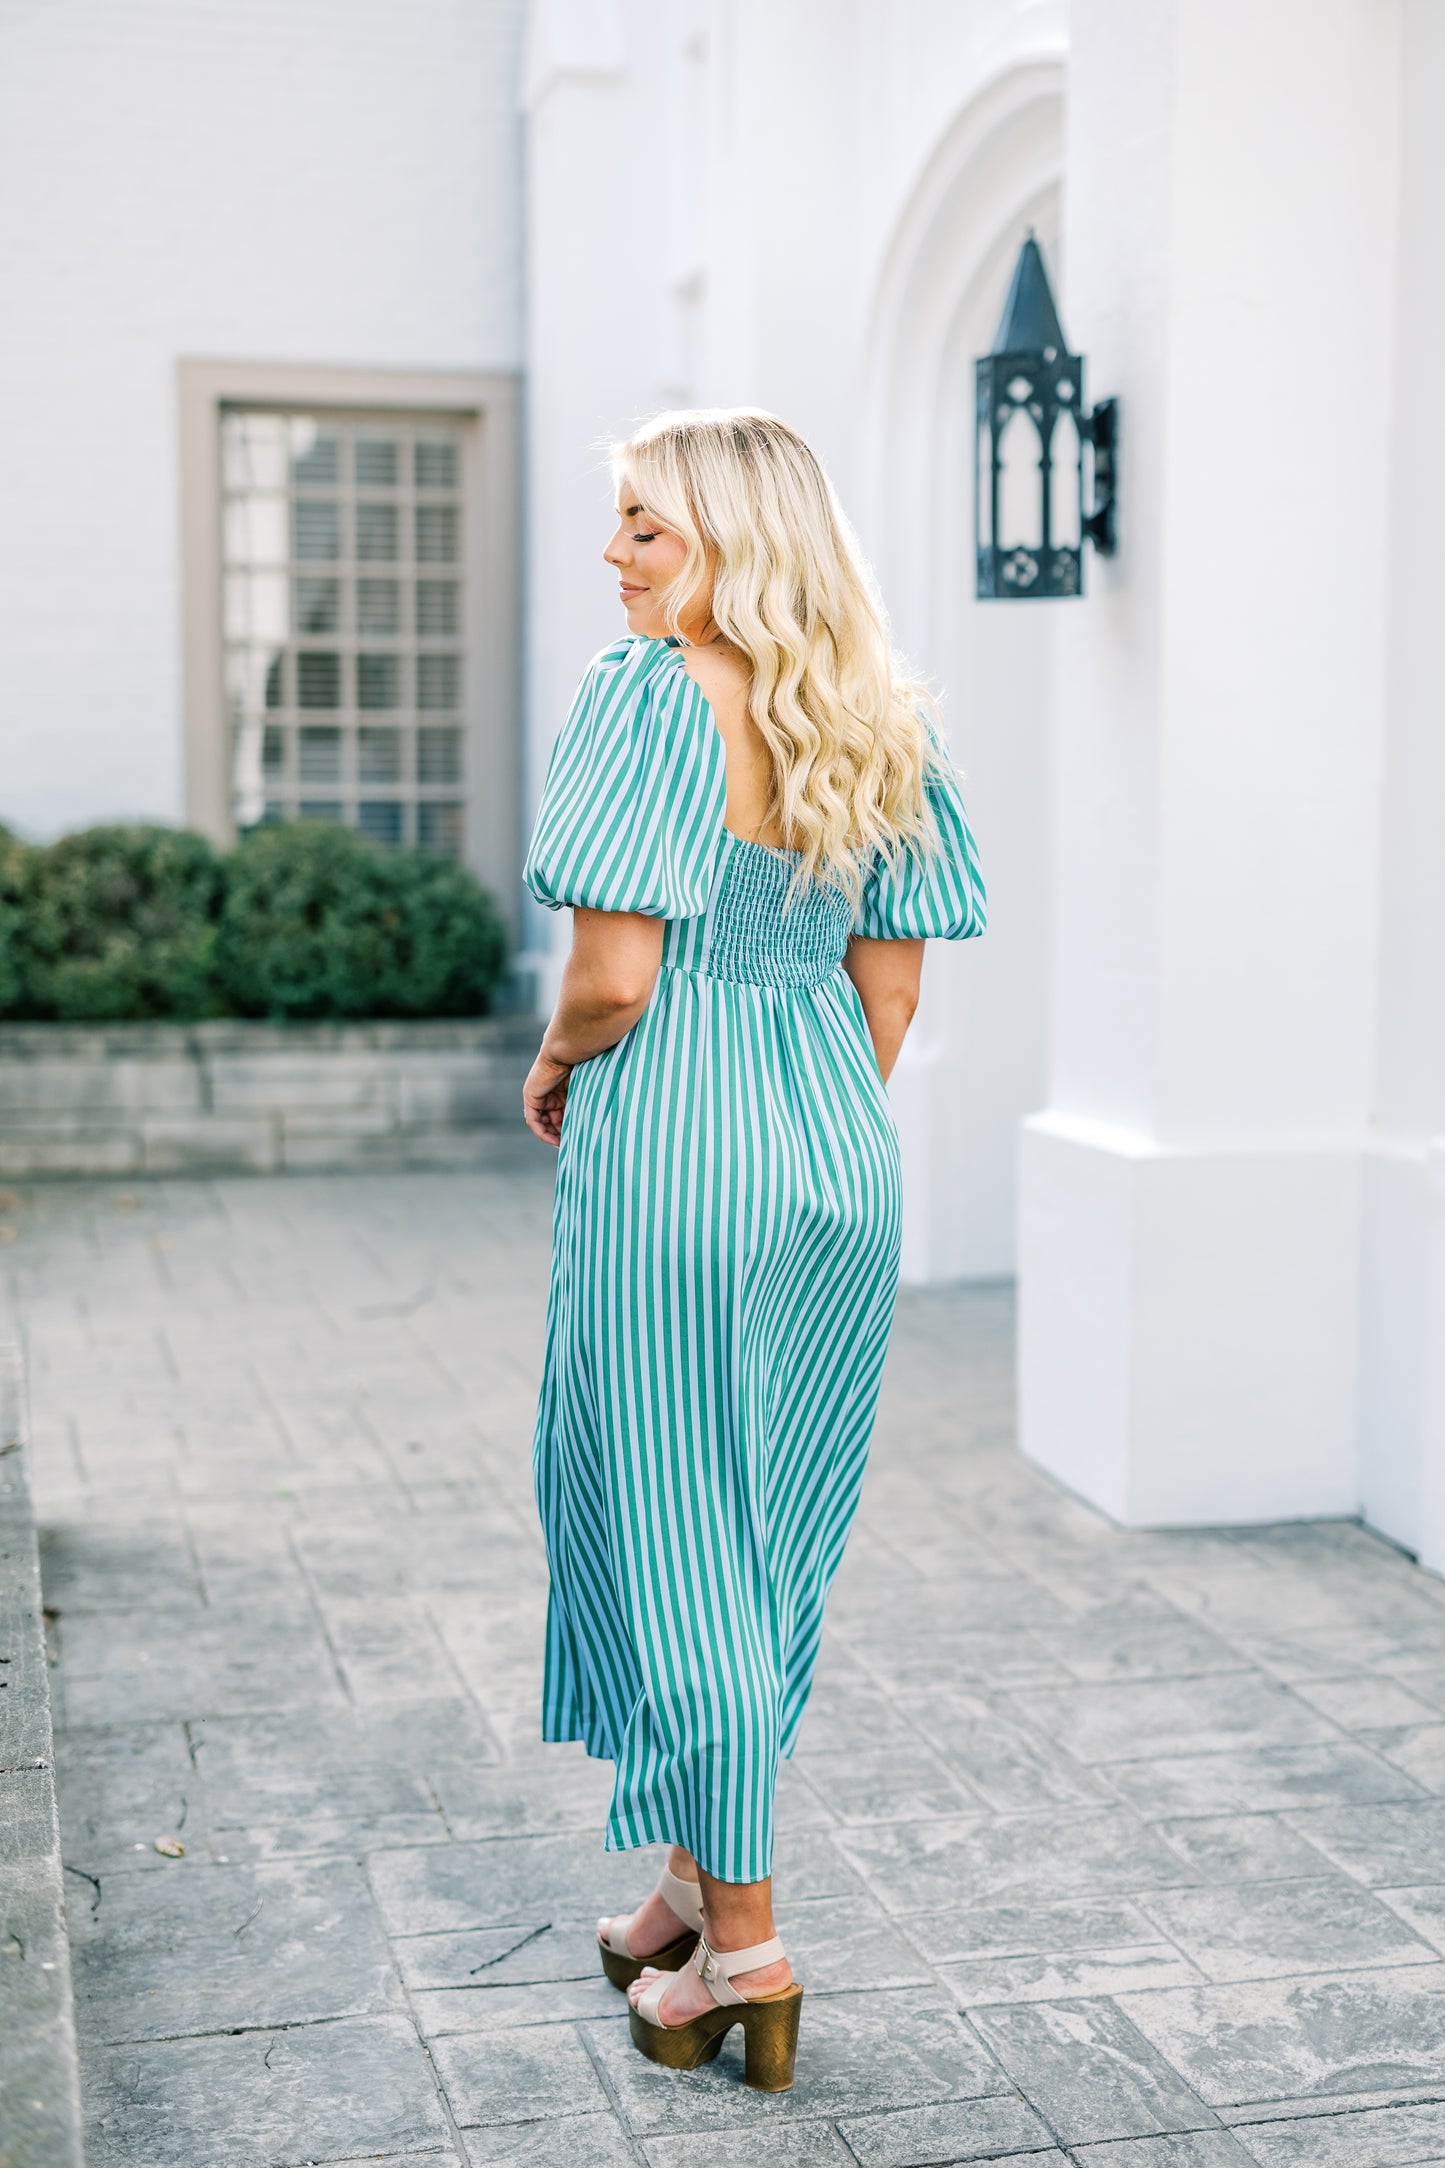 The Olivia Striped Square Neckline Maxi Dress